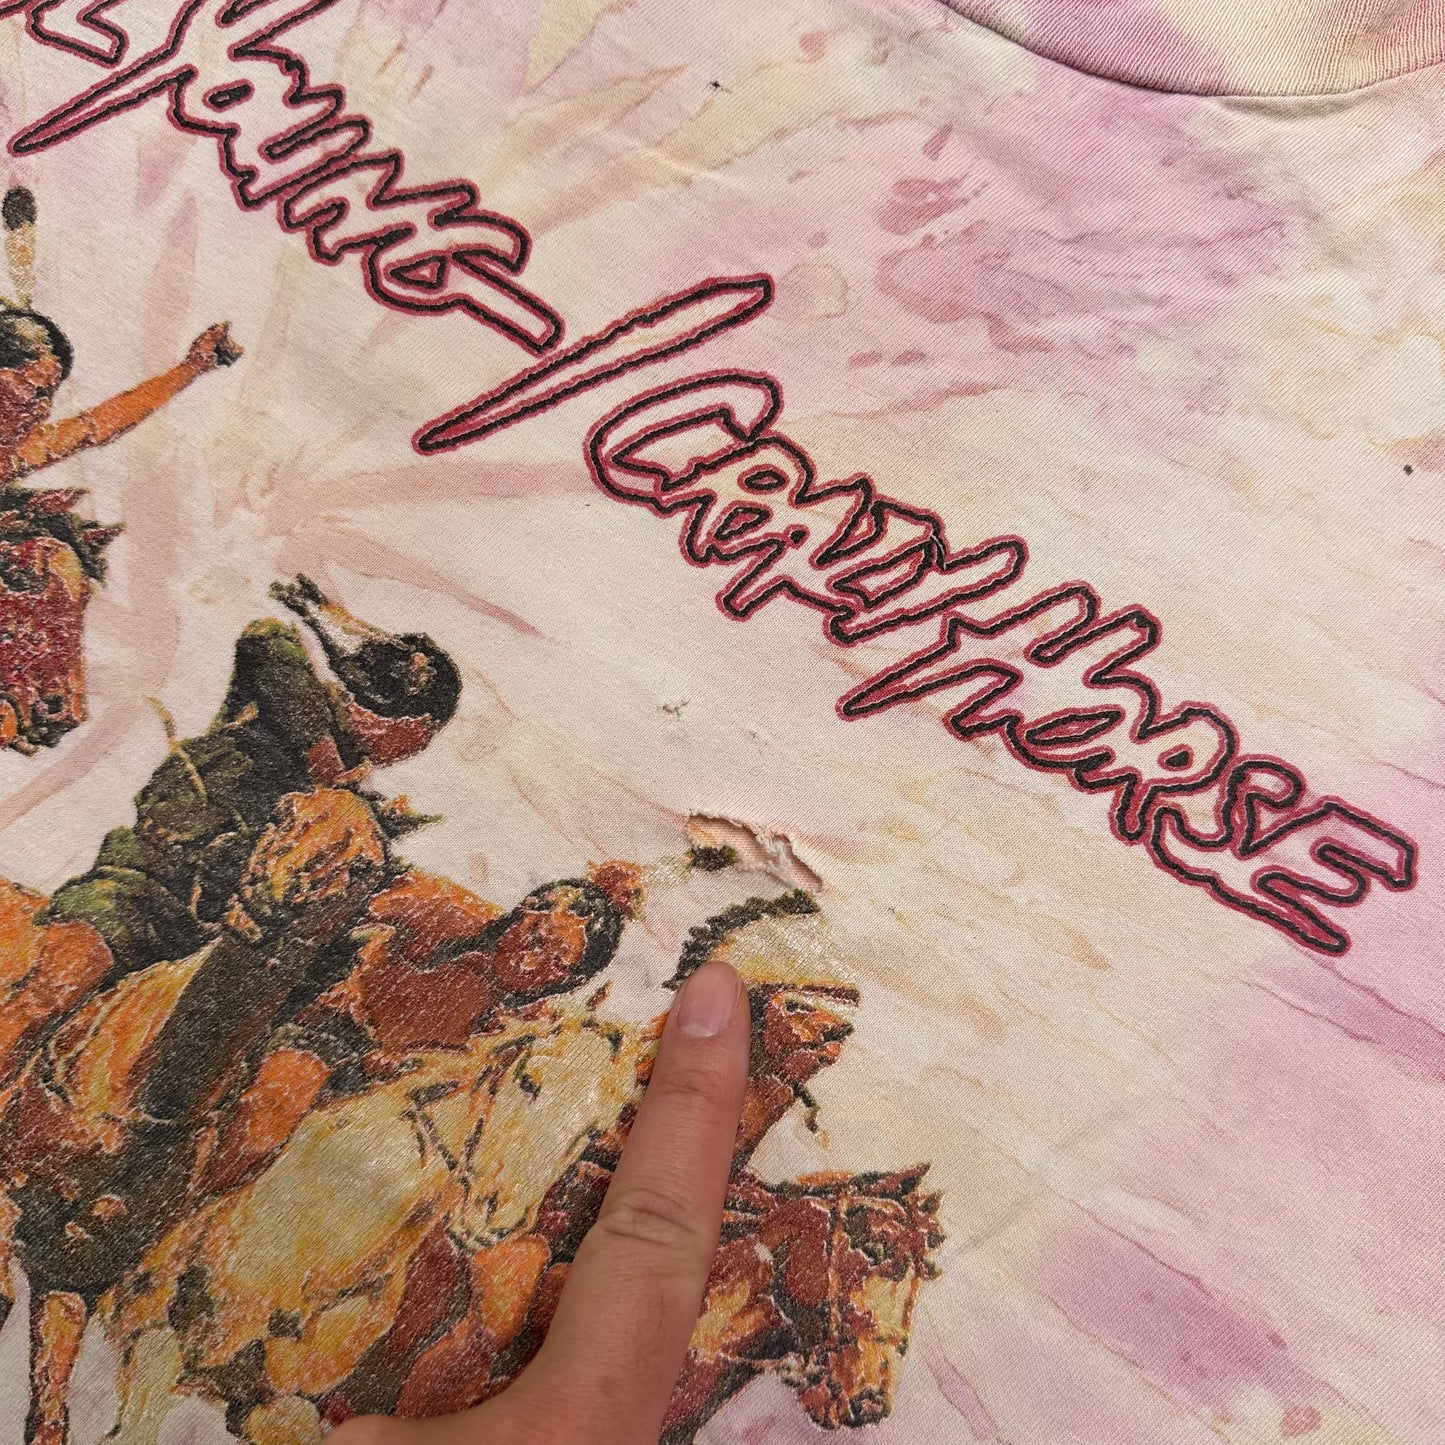 1997 Neil Young Crazy Horse T-Shirt Sz XL (A1152)